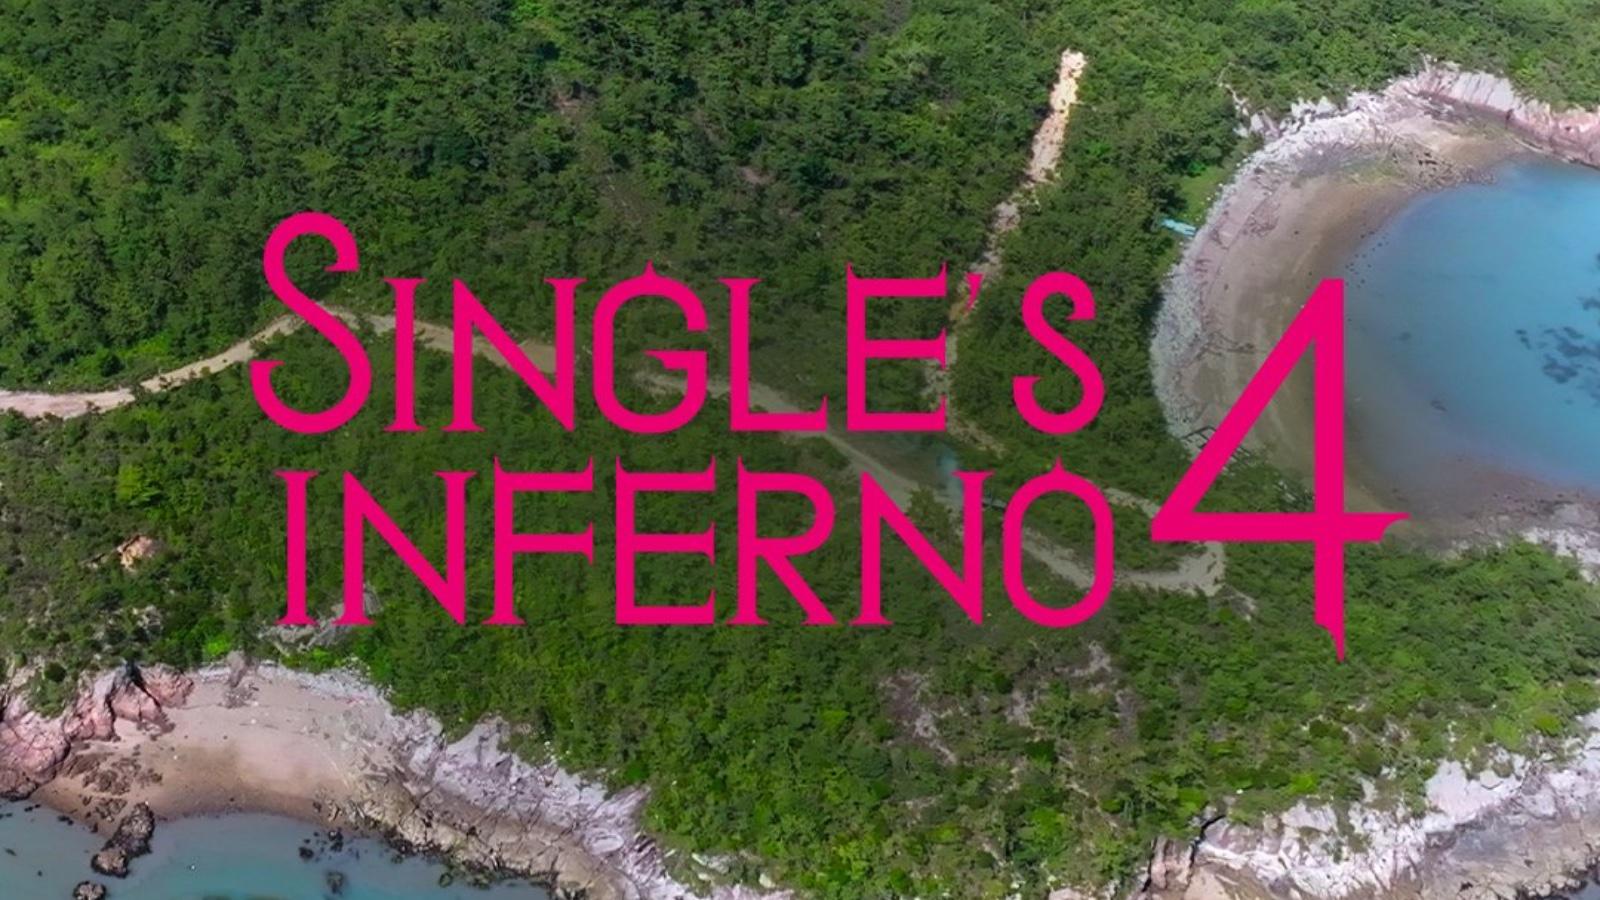 Single's Inferno Season 4 announcement